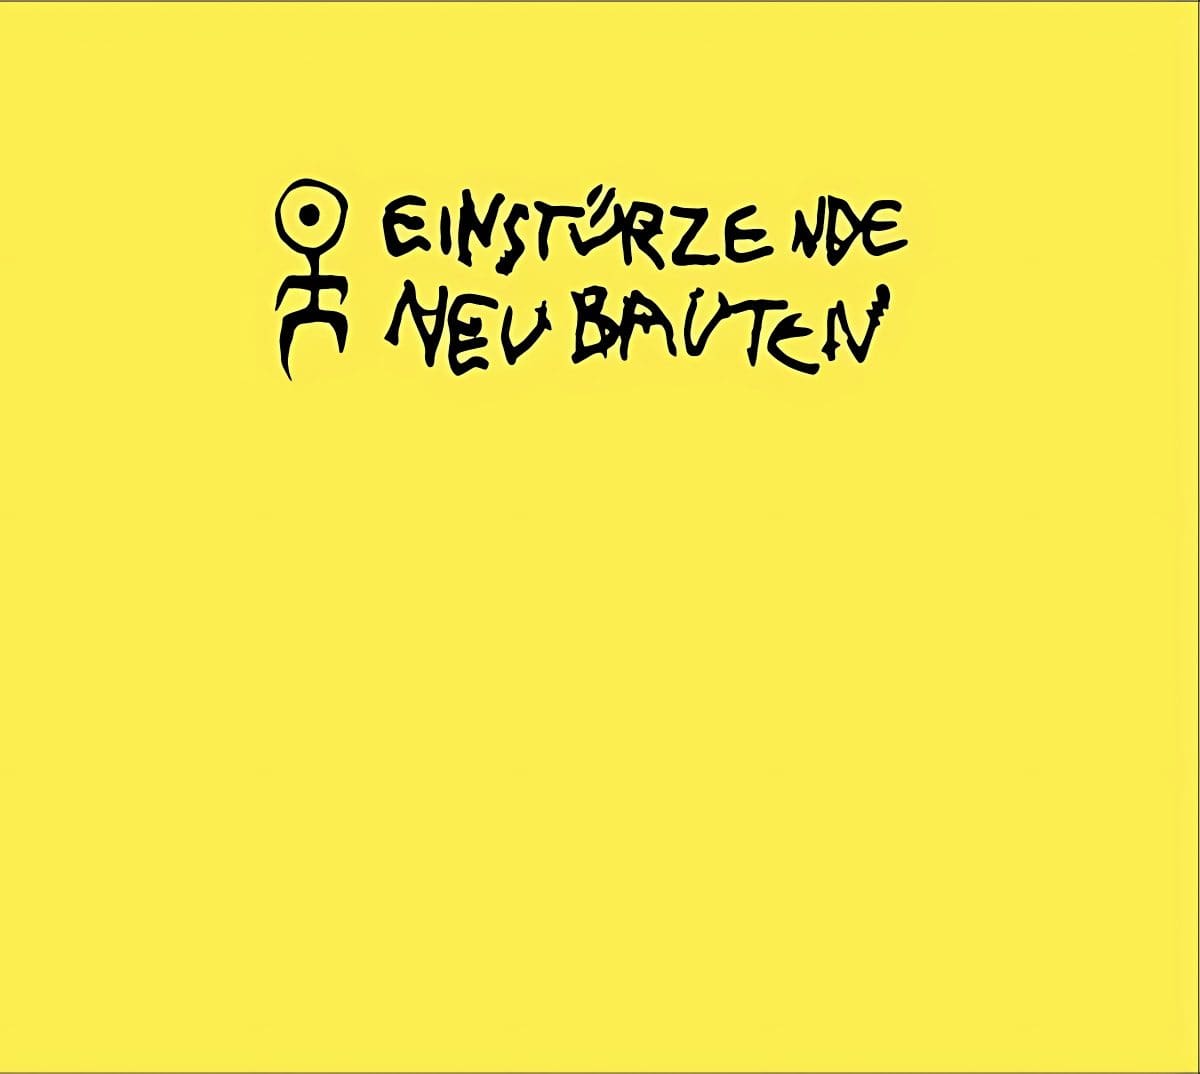 Einstürzende Neubauten returns with all new album in April: 'Rampen - apm: alien pop music'